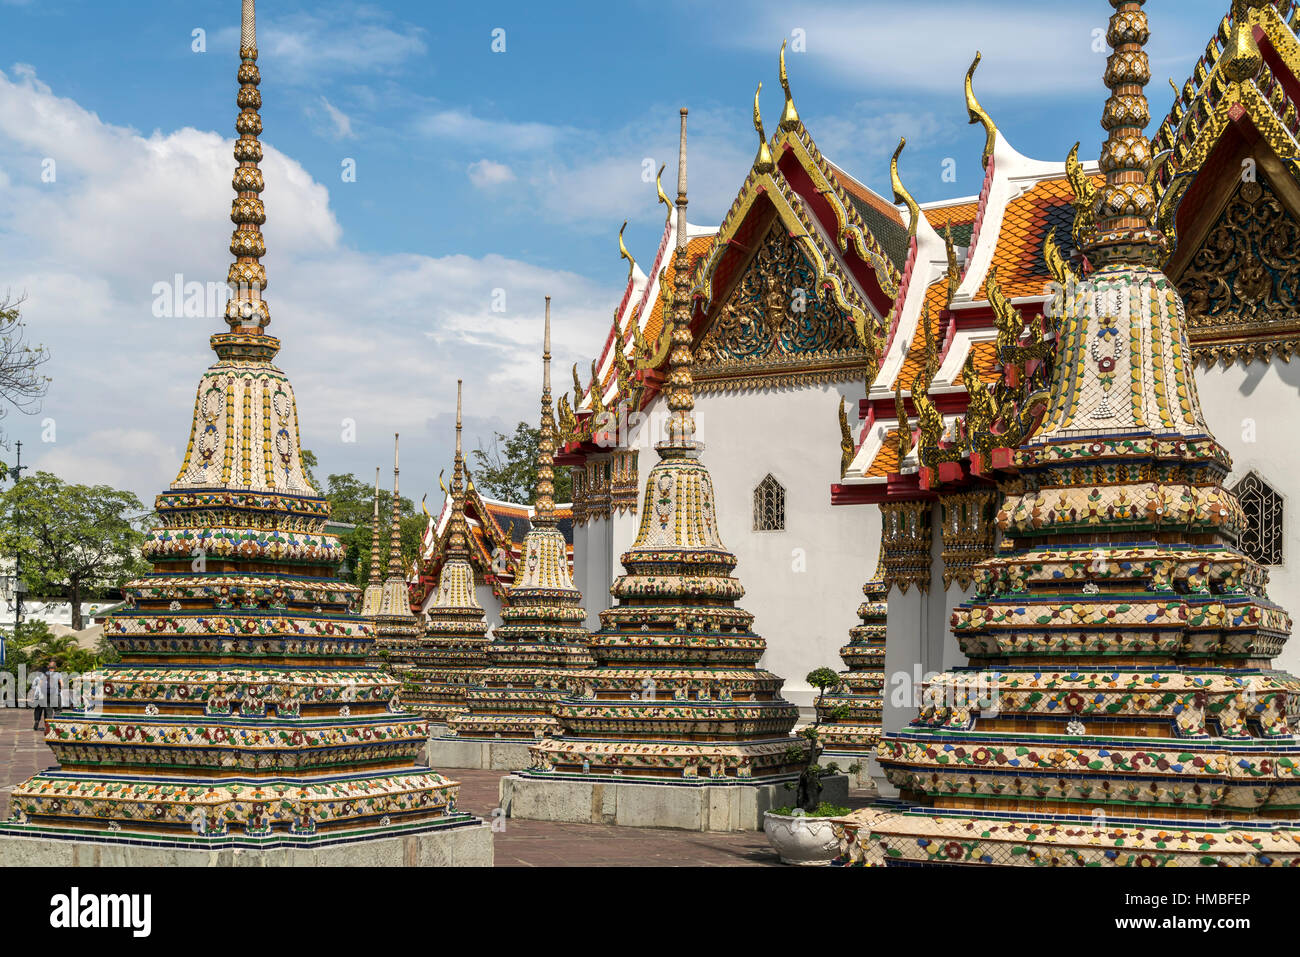 Chedi du temple bouddhiste Wat Pho, Bangkok, Thailande, Asie Banque D'Images